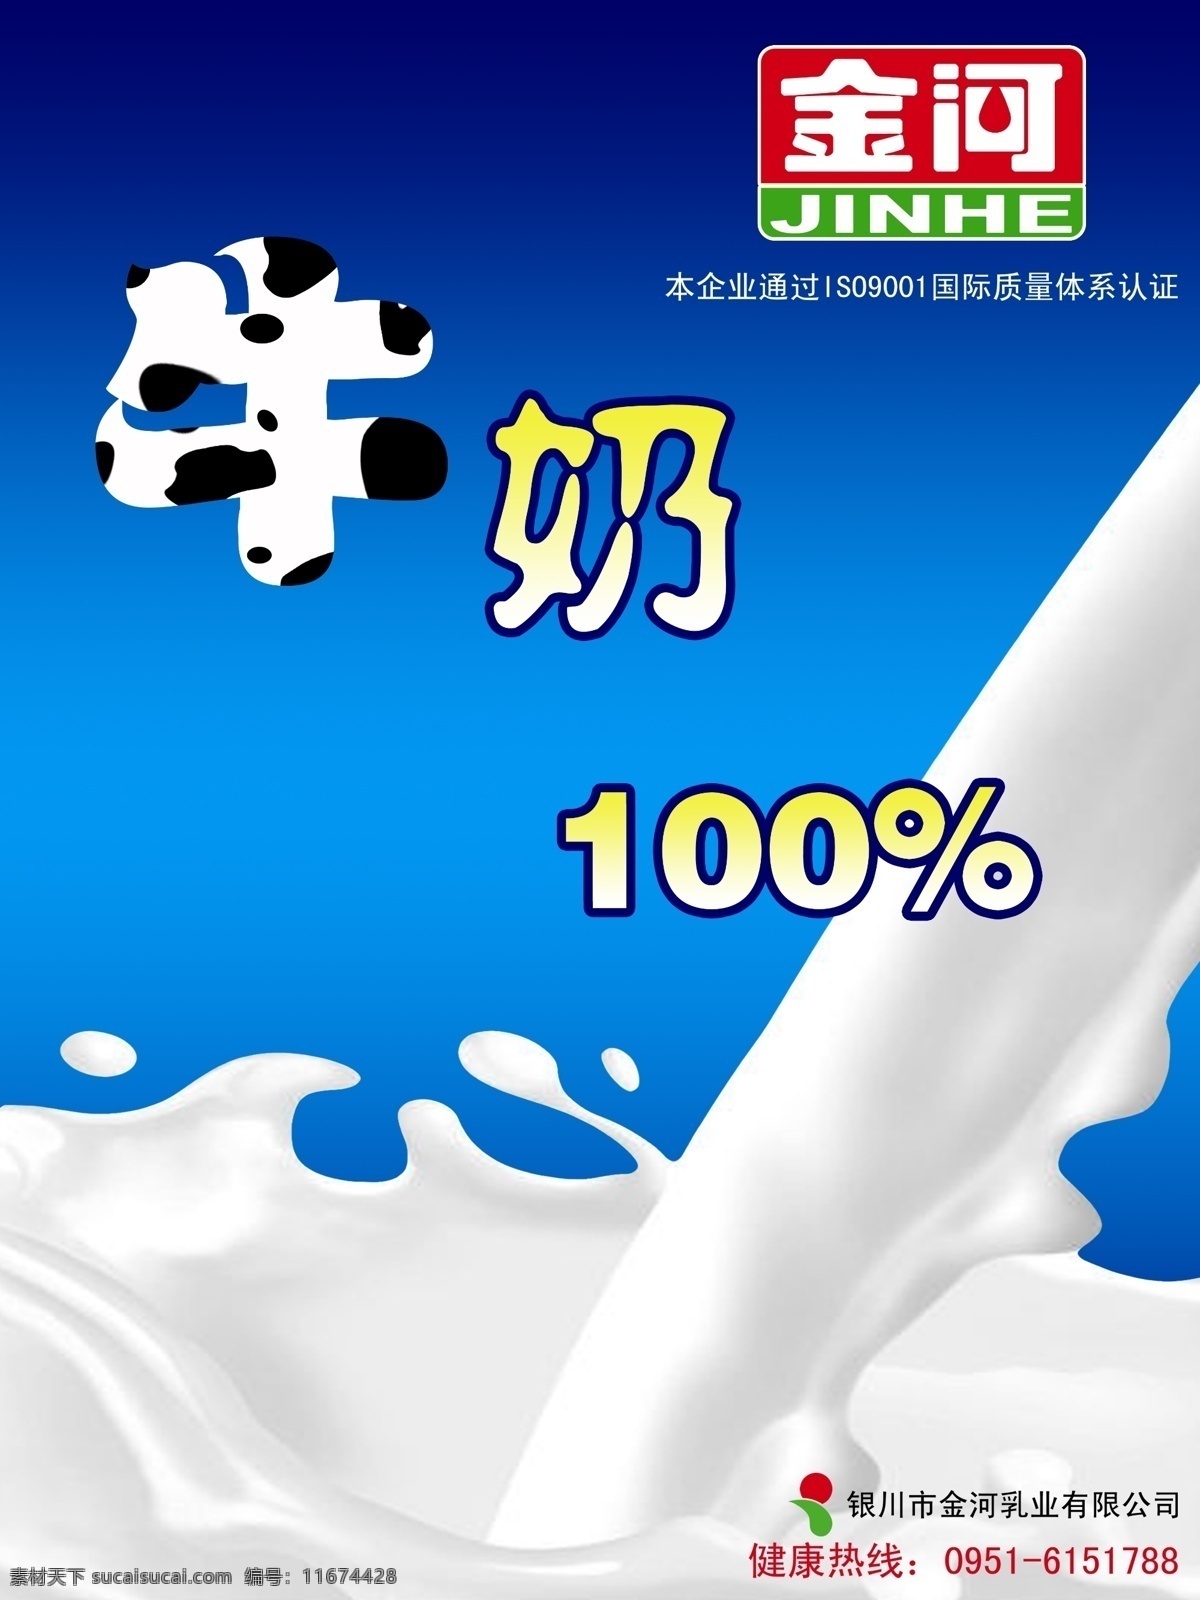 牛奶 模版下载 牛奶素材下载 牛奶模板下载 金河 奶 纯牛奶 溅 蓝色 海报 招贴 简洁 广告 原创 奶花 流动 广告设计模板 源文件 招贴设计 白色